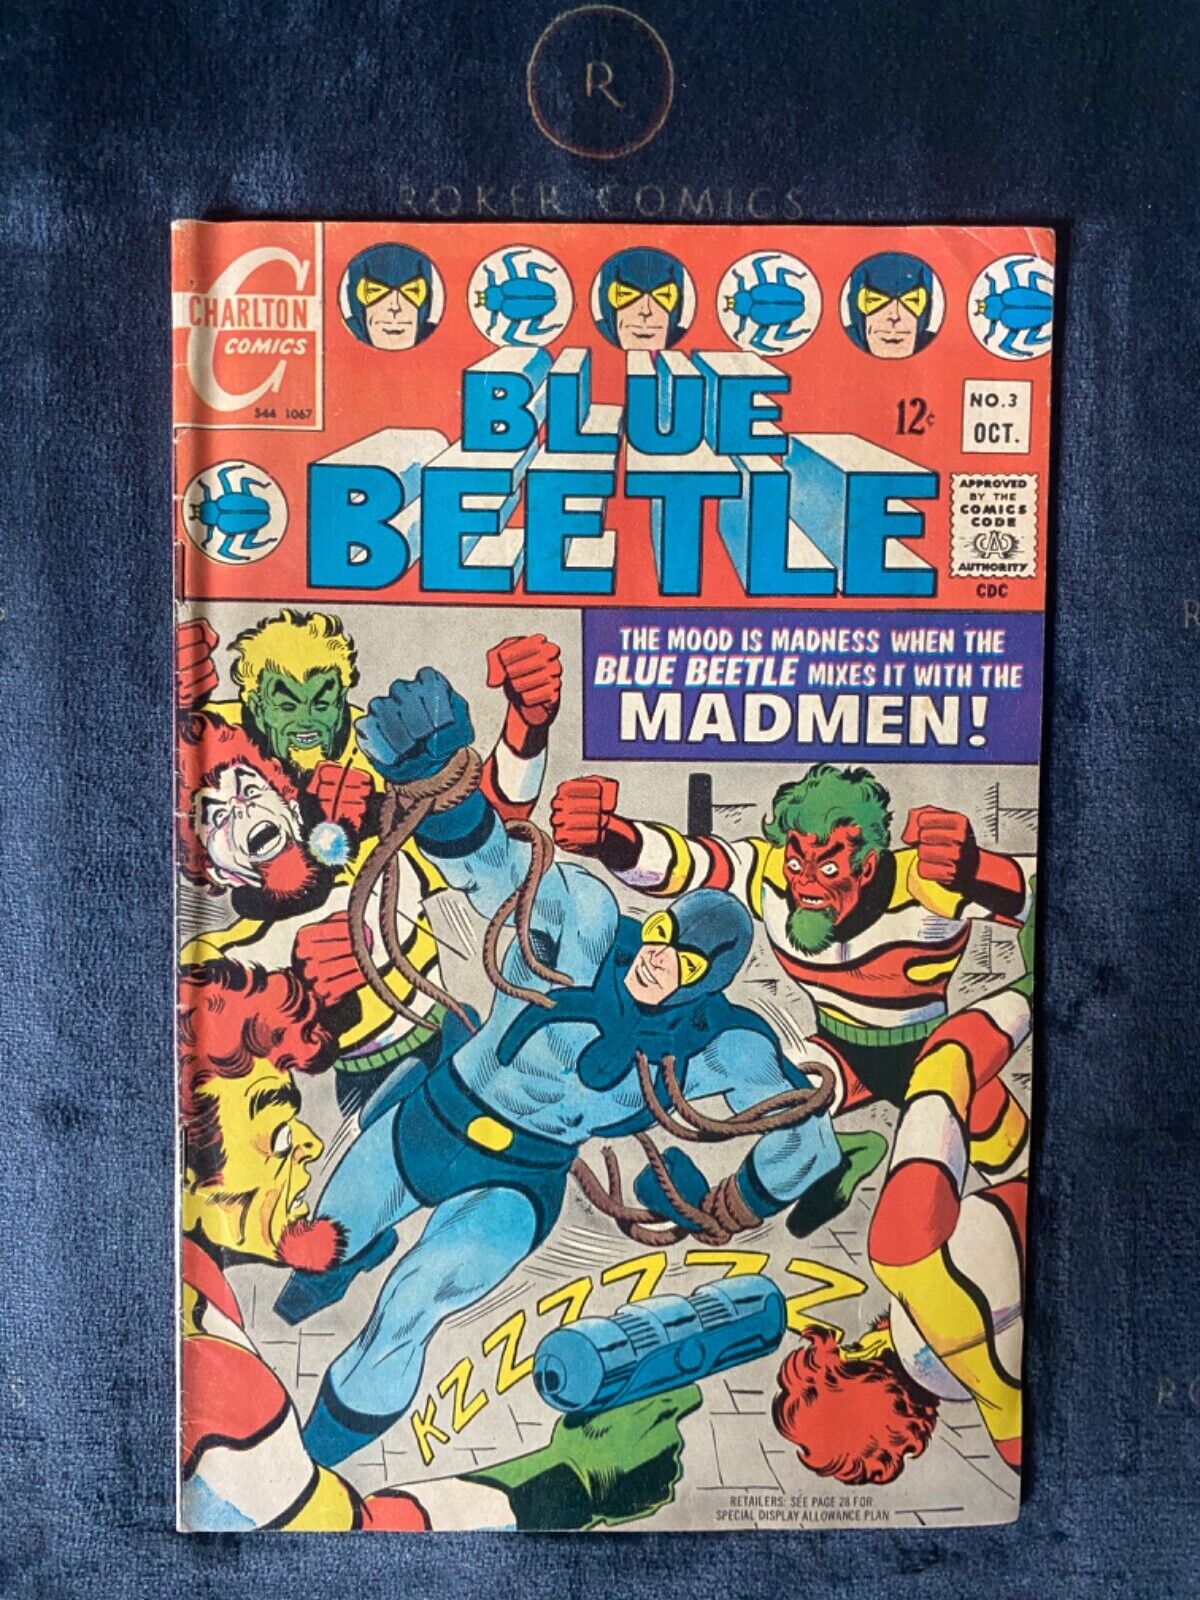 RARE BLUE BEETLE #3 (Charlton Comics 1967) Steve Ditko art